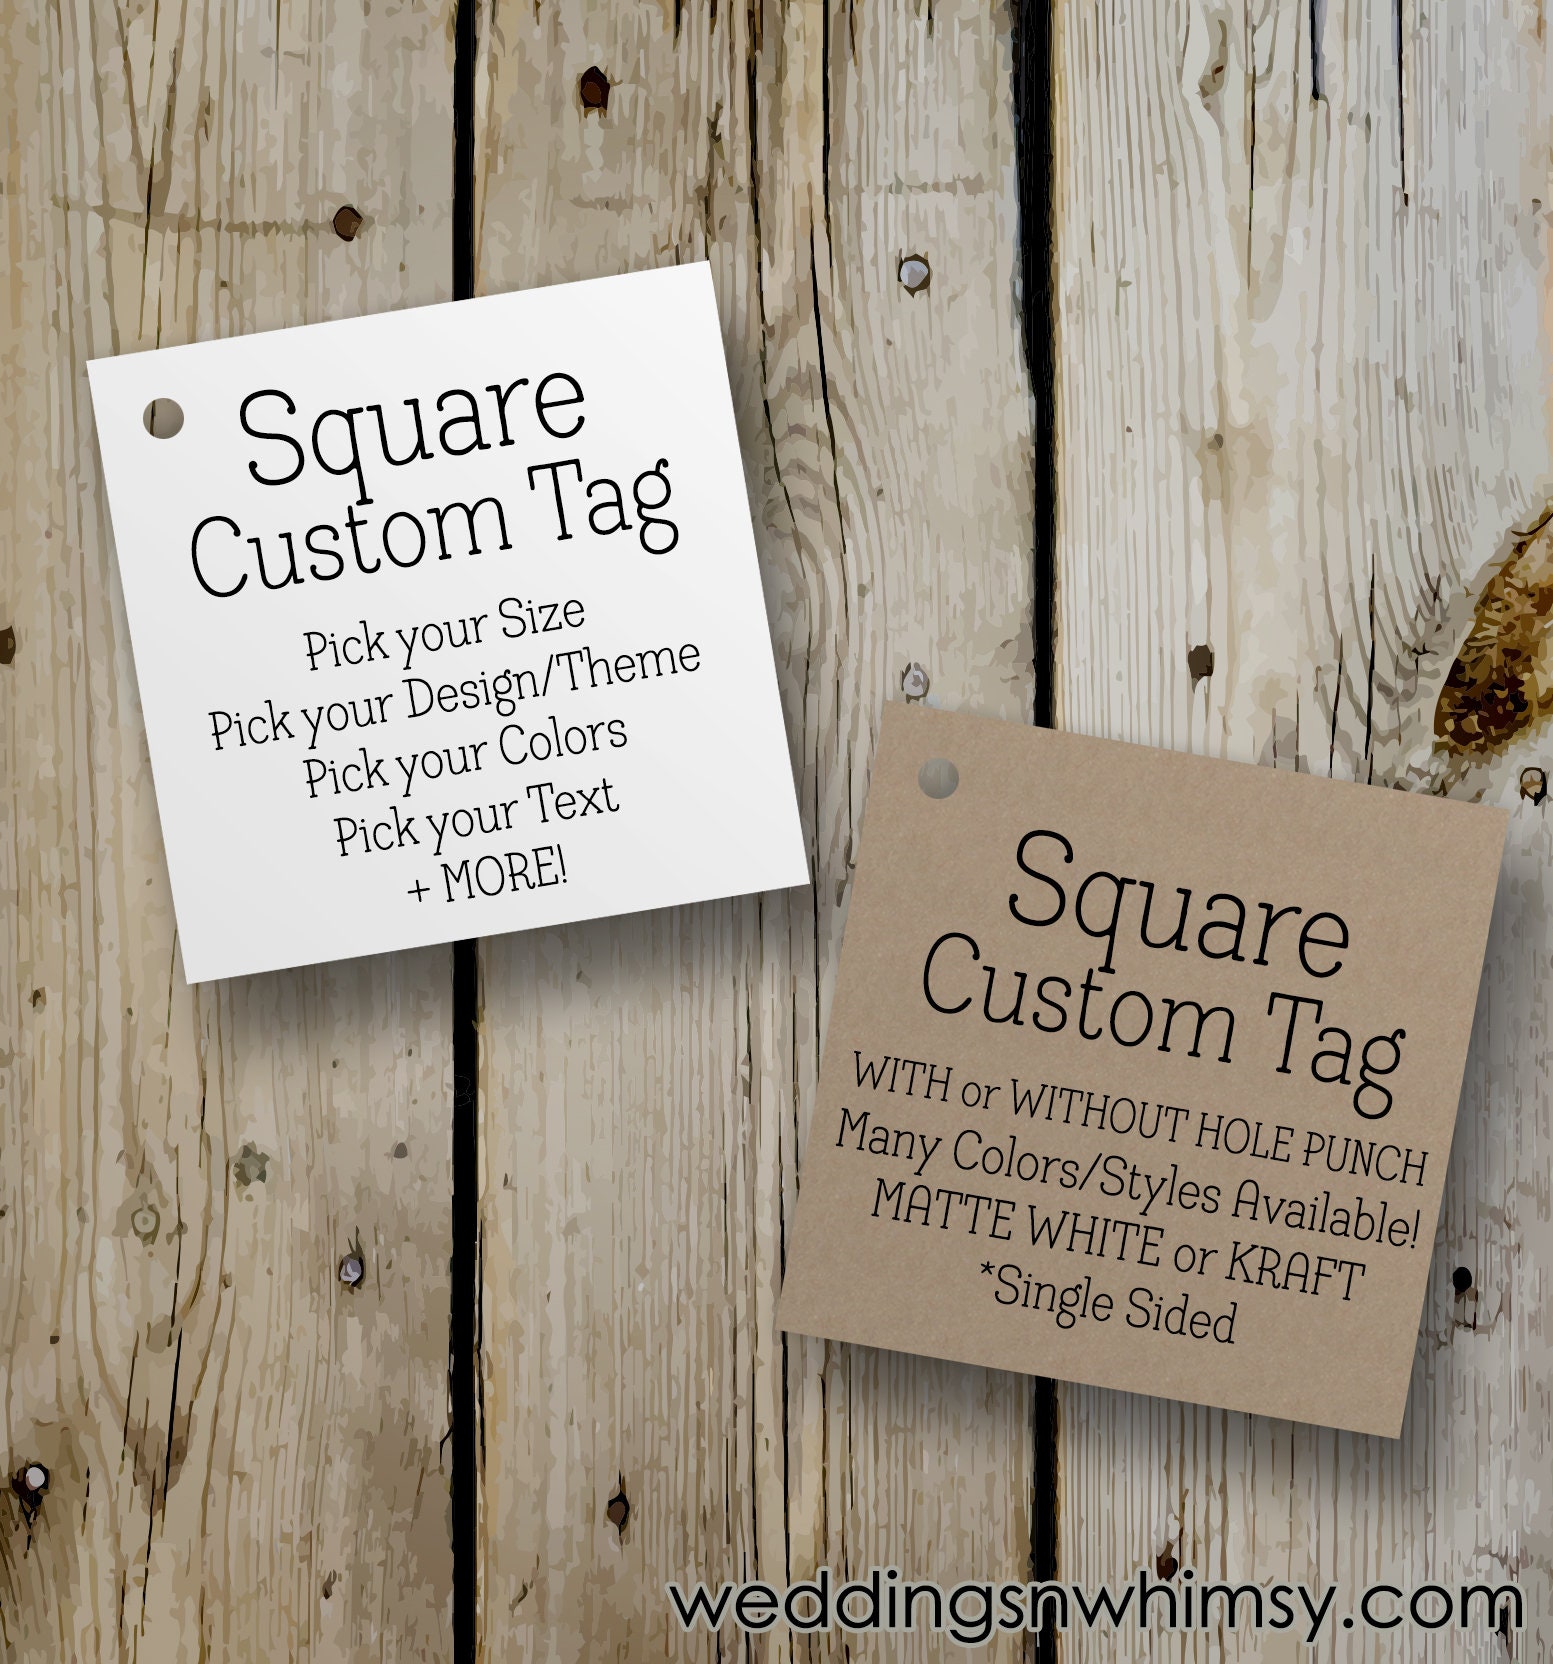 Square Retail Tag  Custom Square Retail Hang Tags